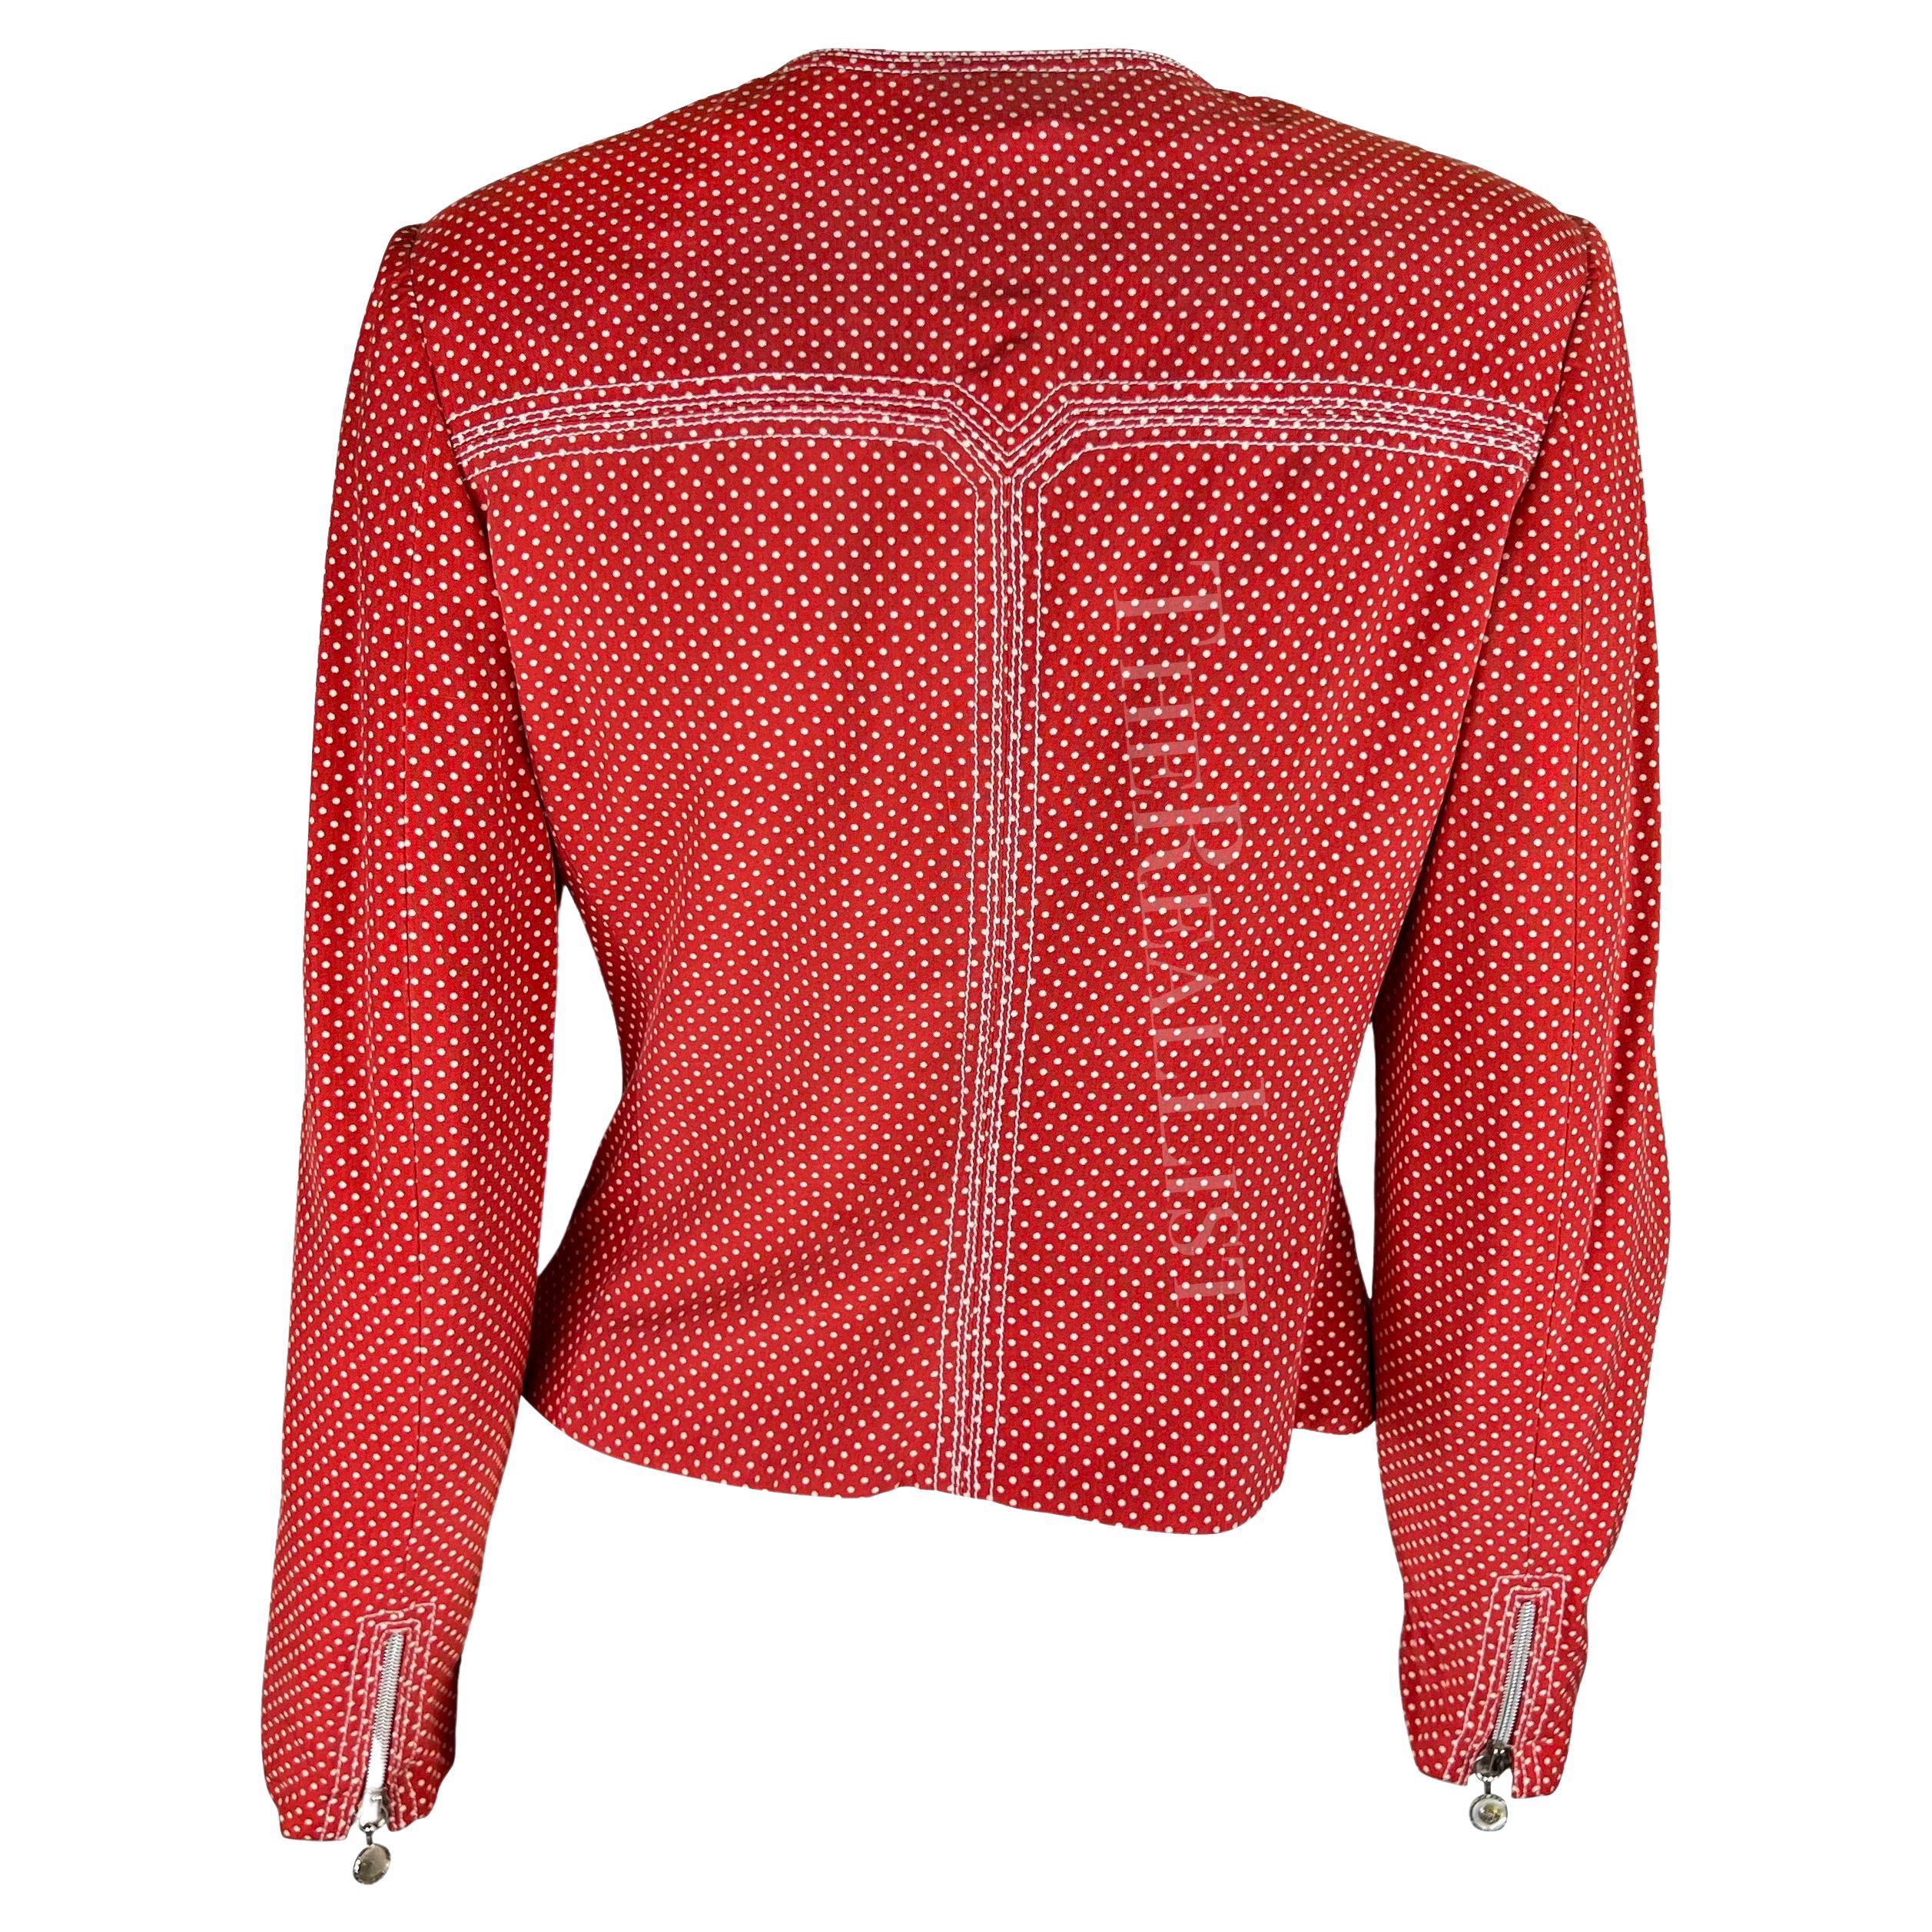 Women's S/S 1996 Gianni Versace Red Polka Dot Zip Up Jacket